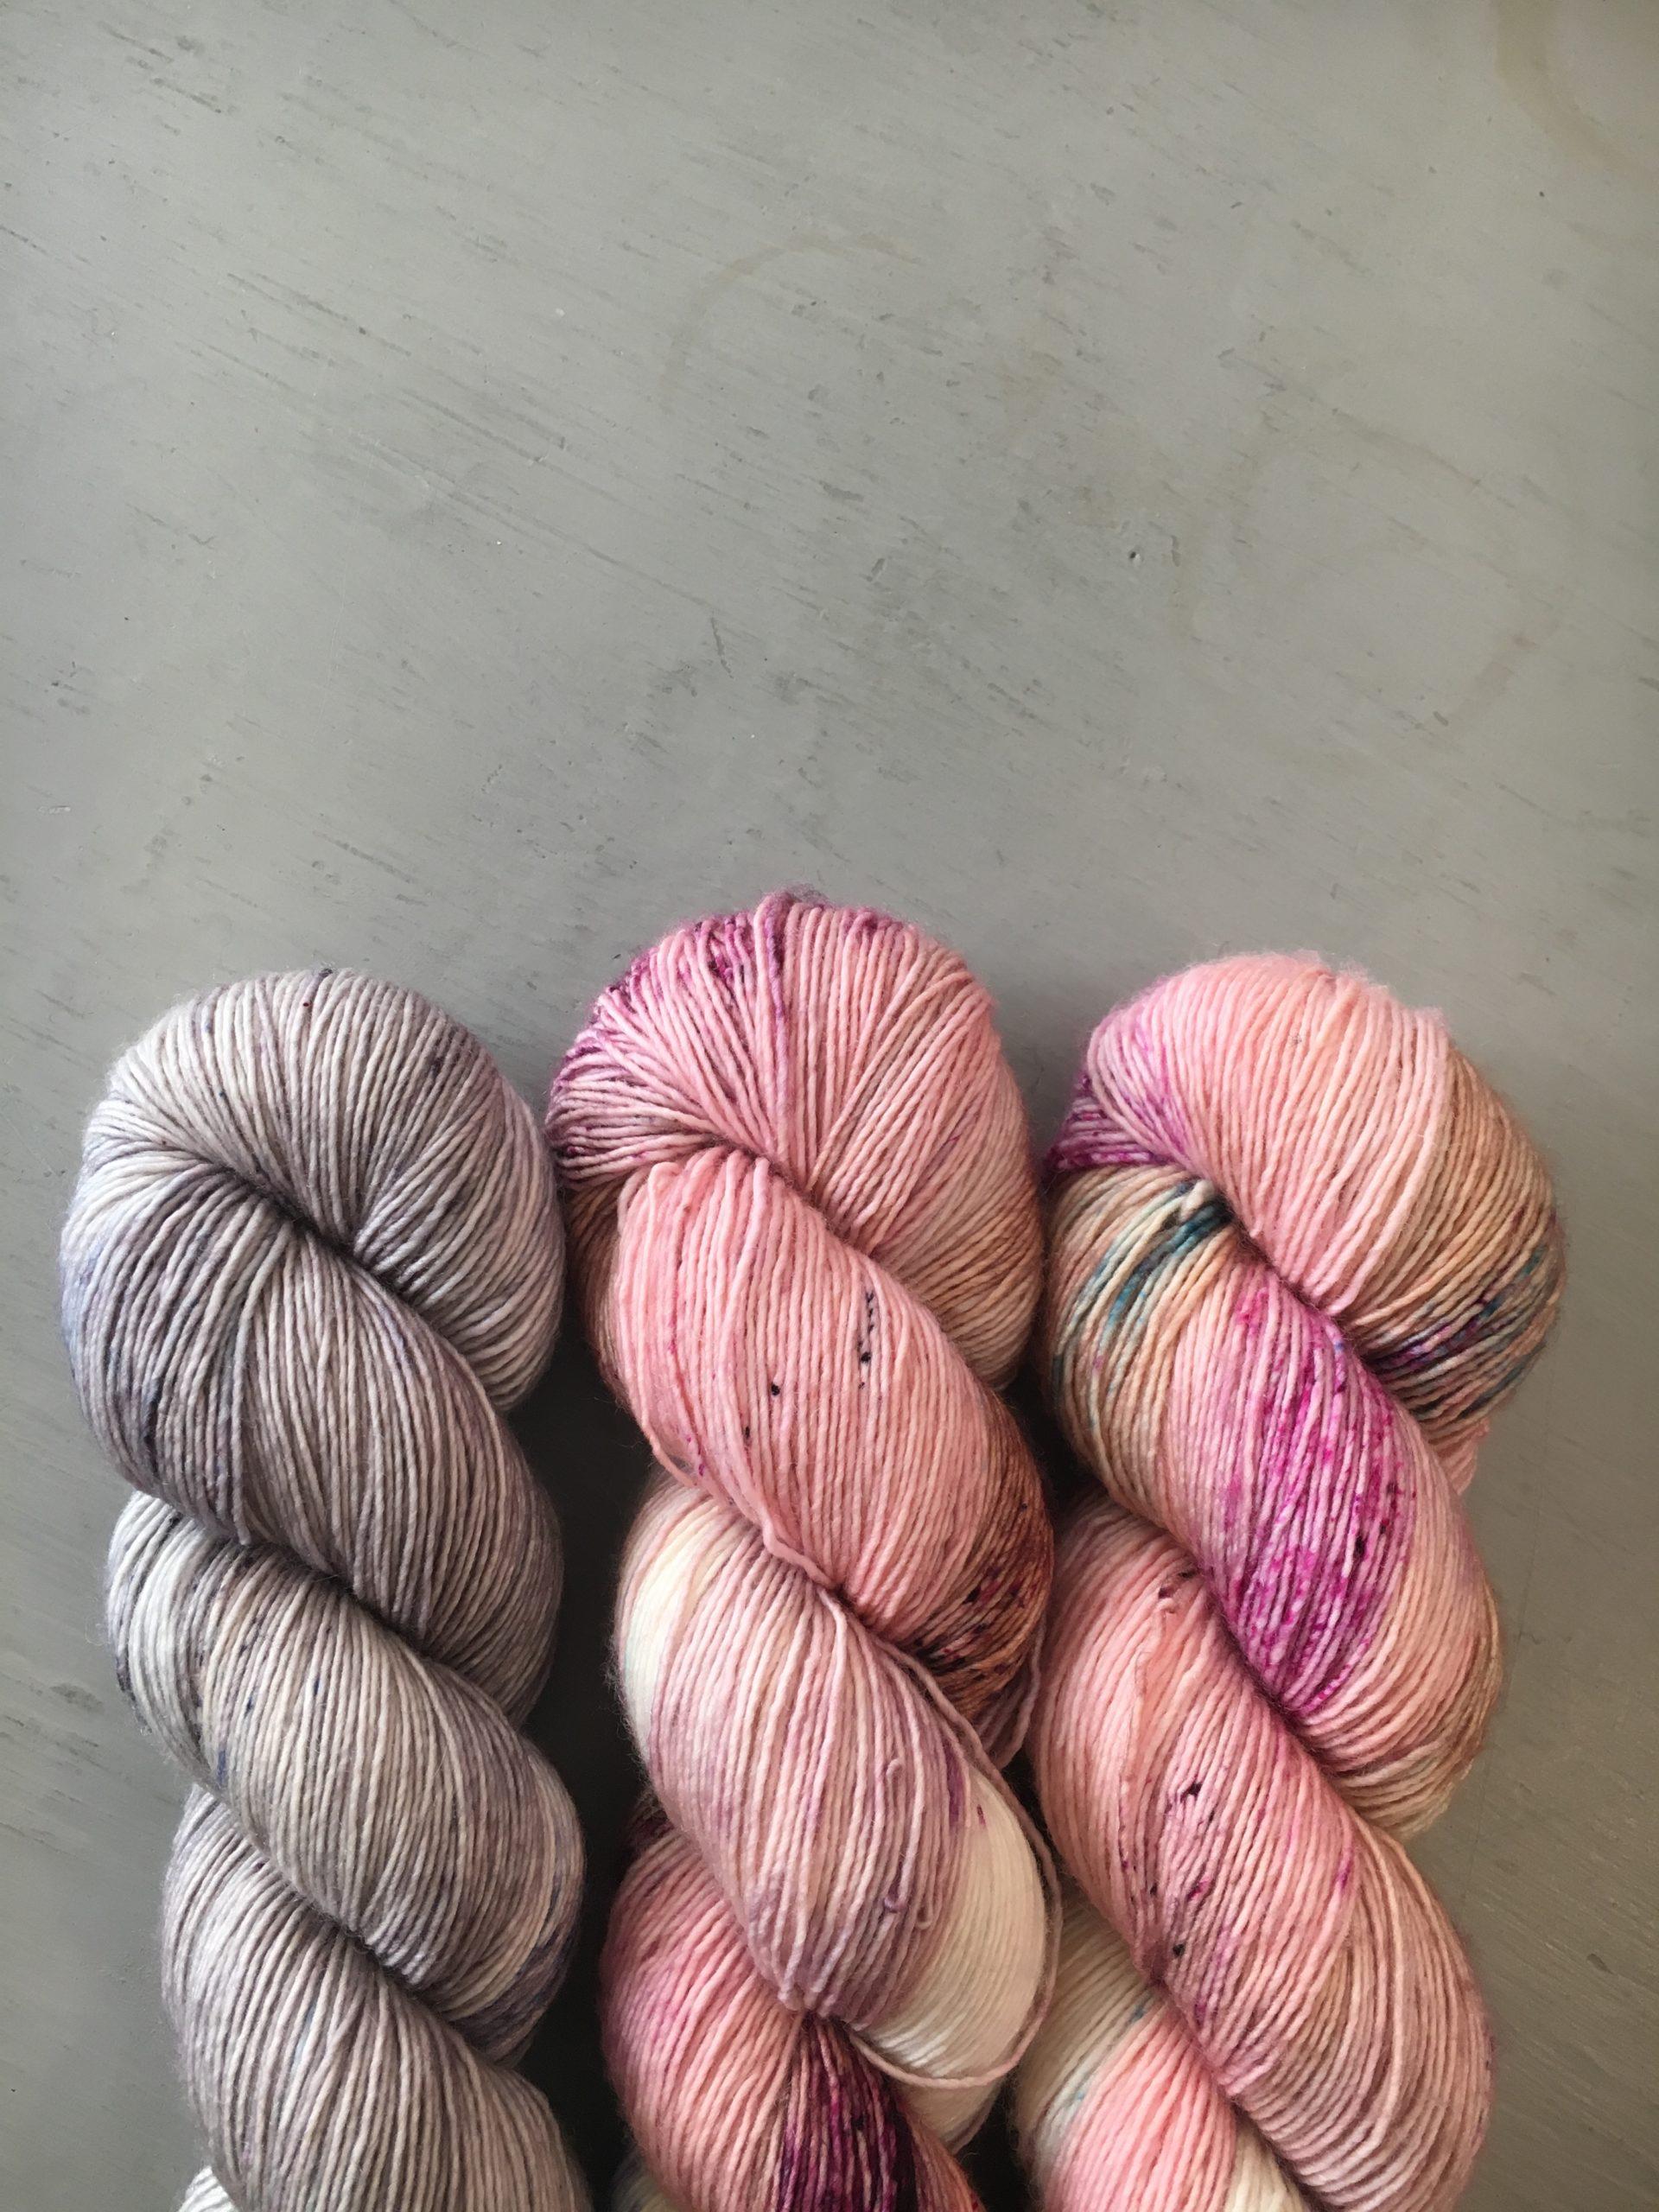 BLUSHING - Dyed to Order - Hand Dyed Yarn Skein